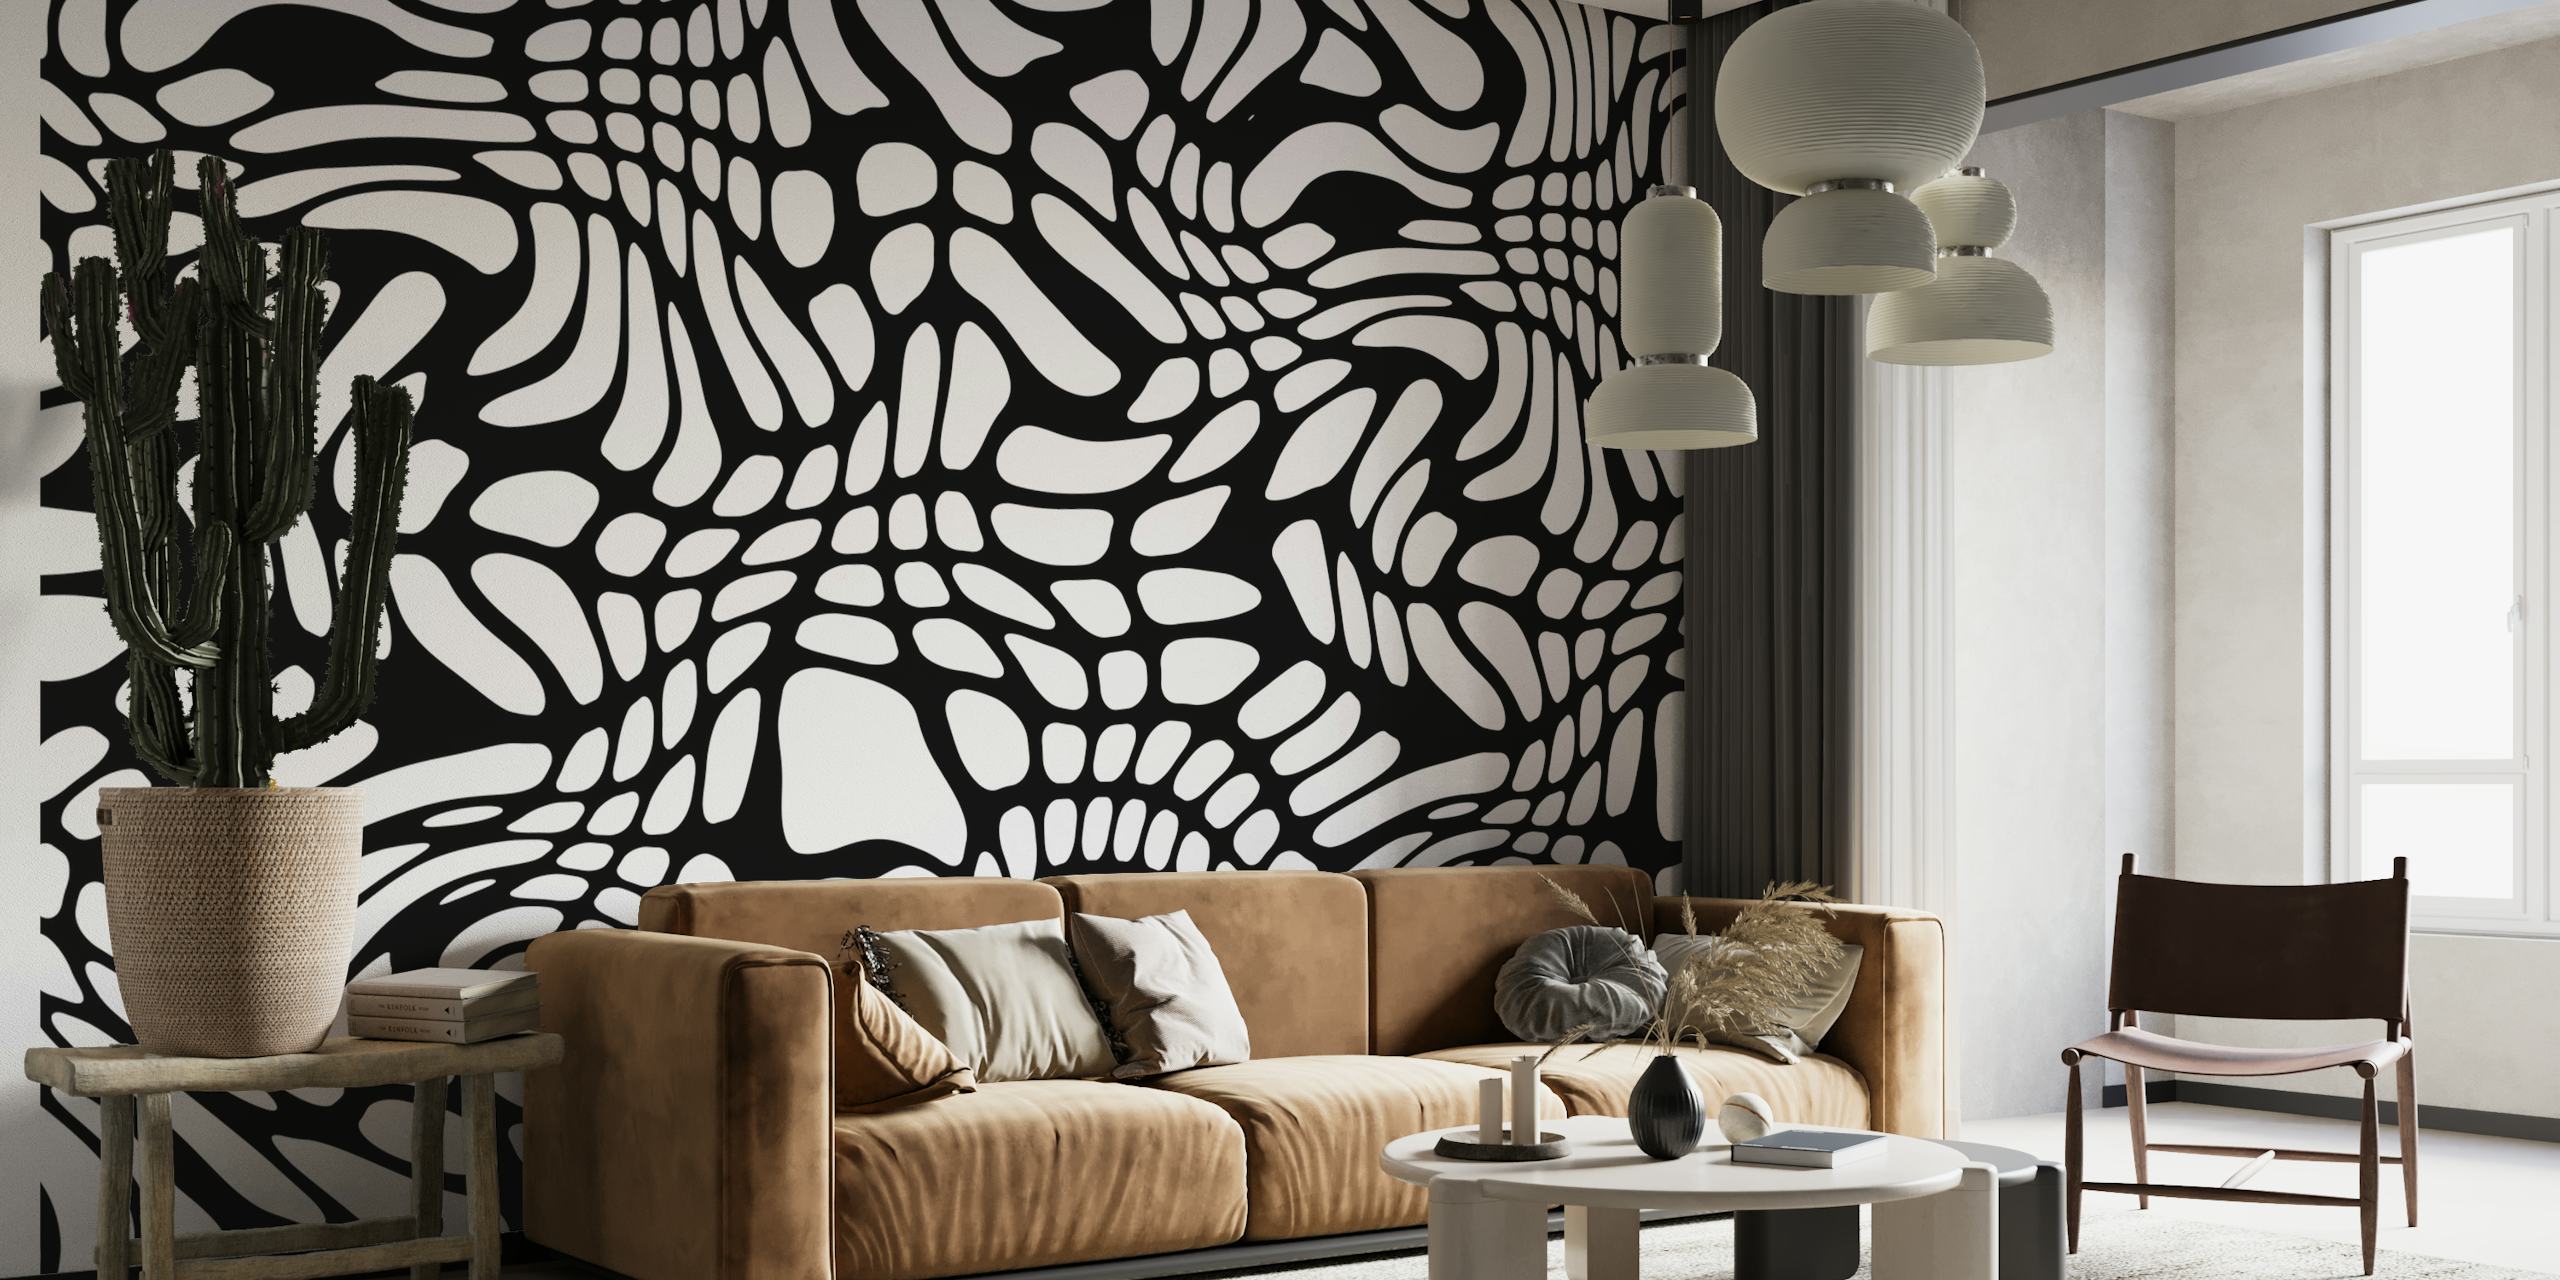 Schwarz-weiße Fototapete mit abstrakten Formen für die moderne Inneneinrichtung